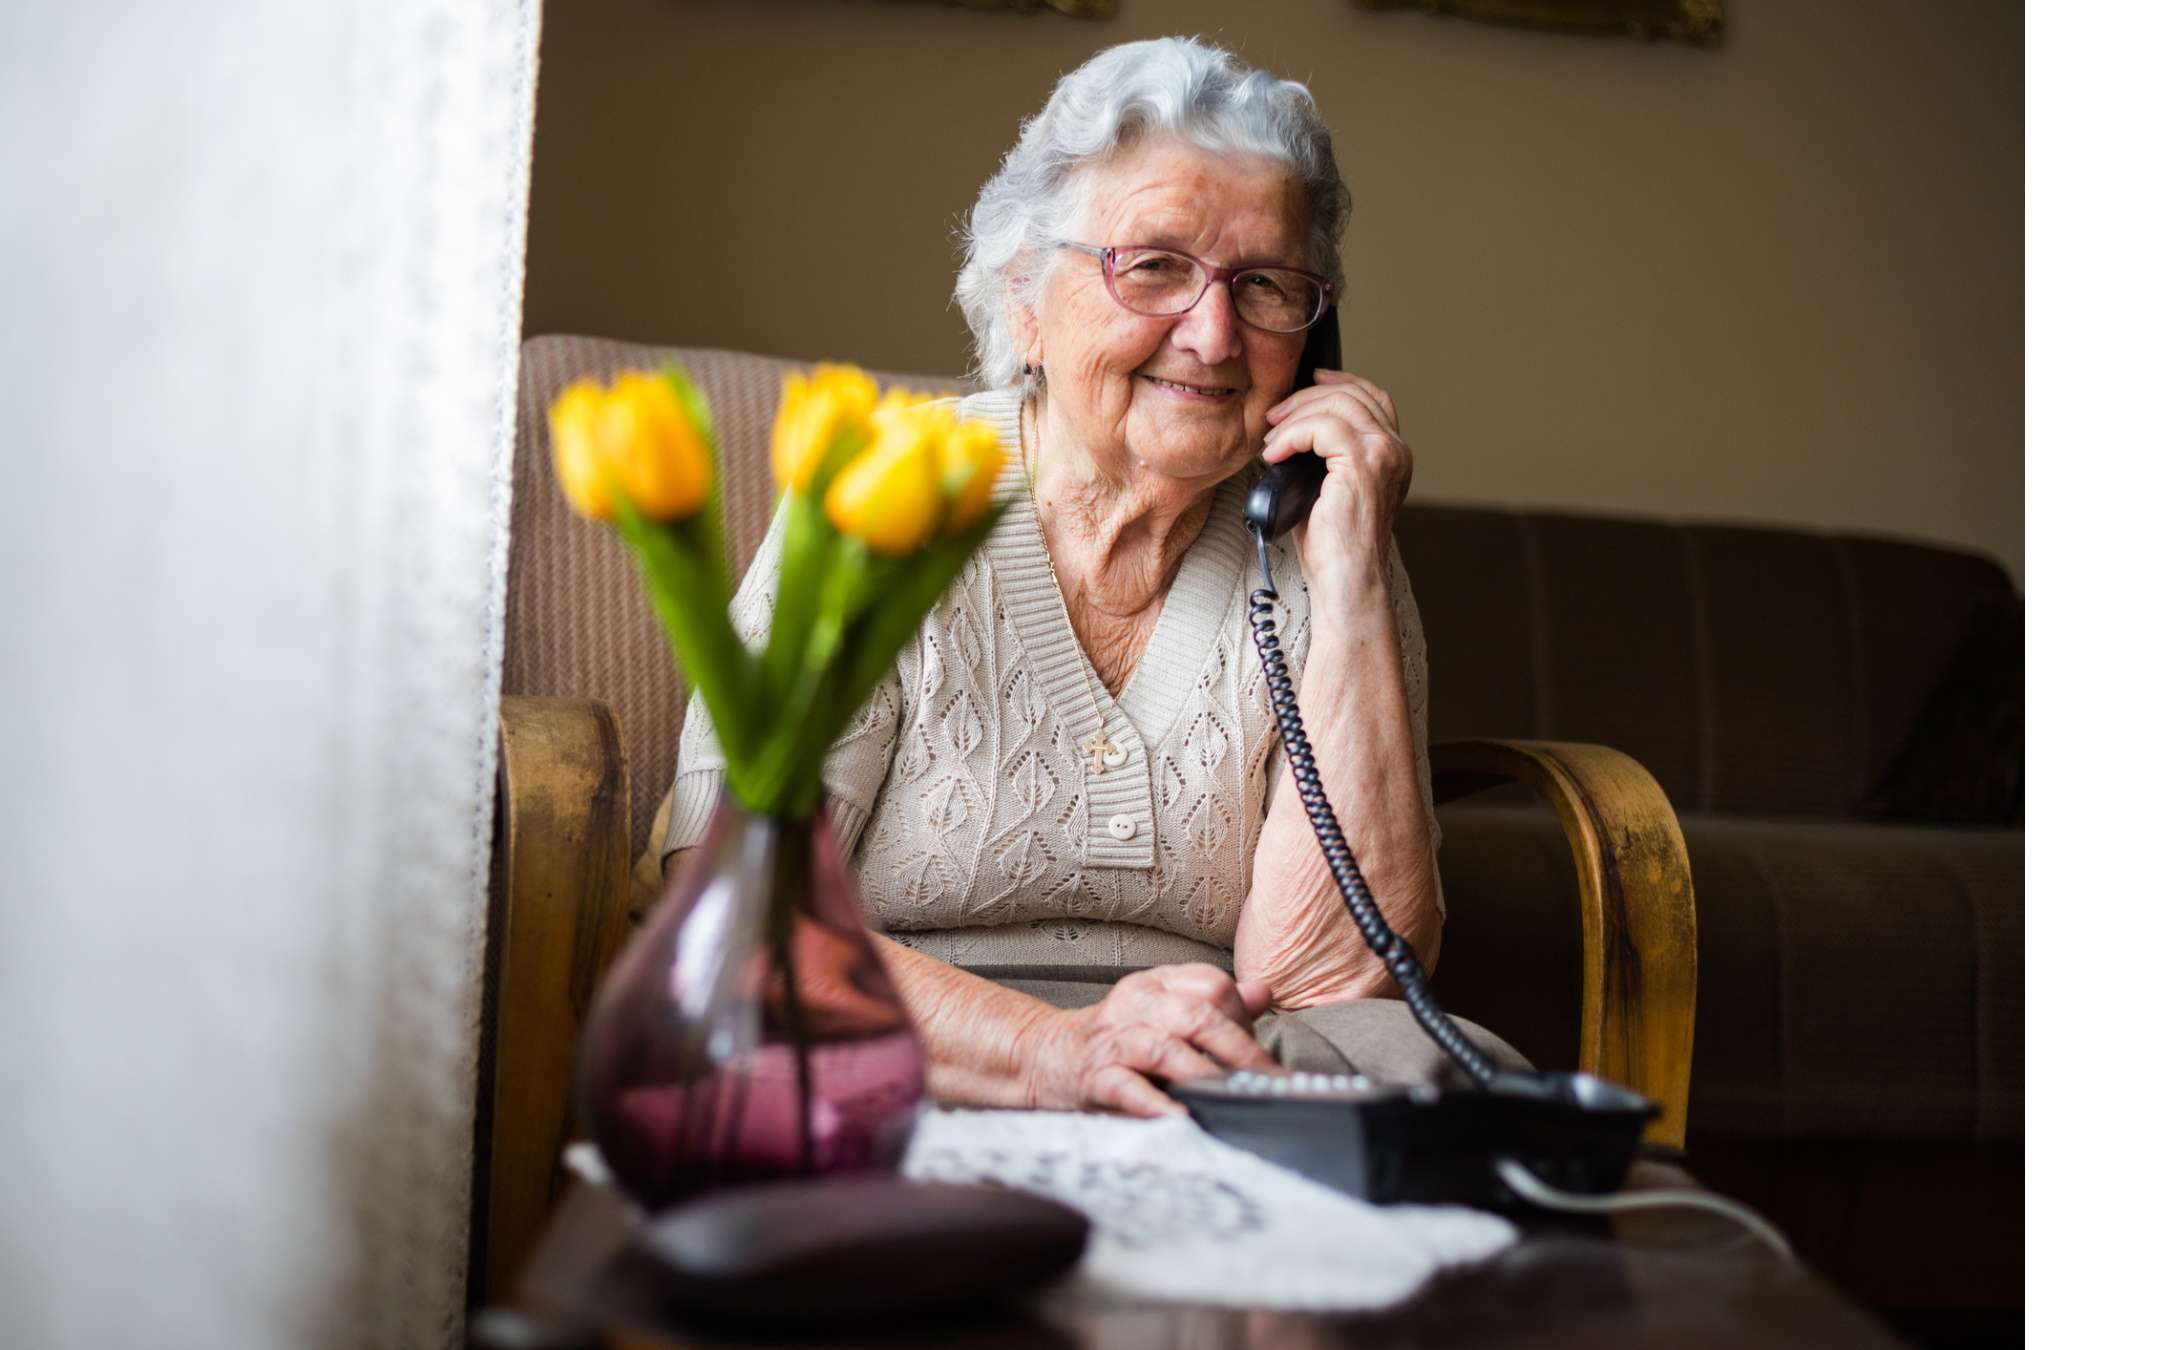 Migliore telefono fisso per anziani